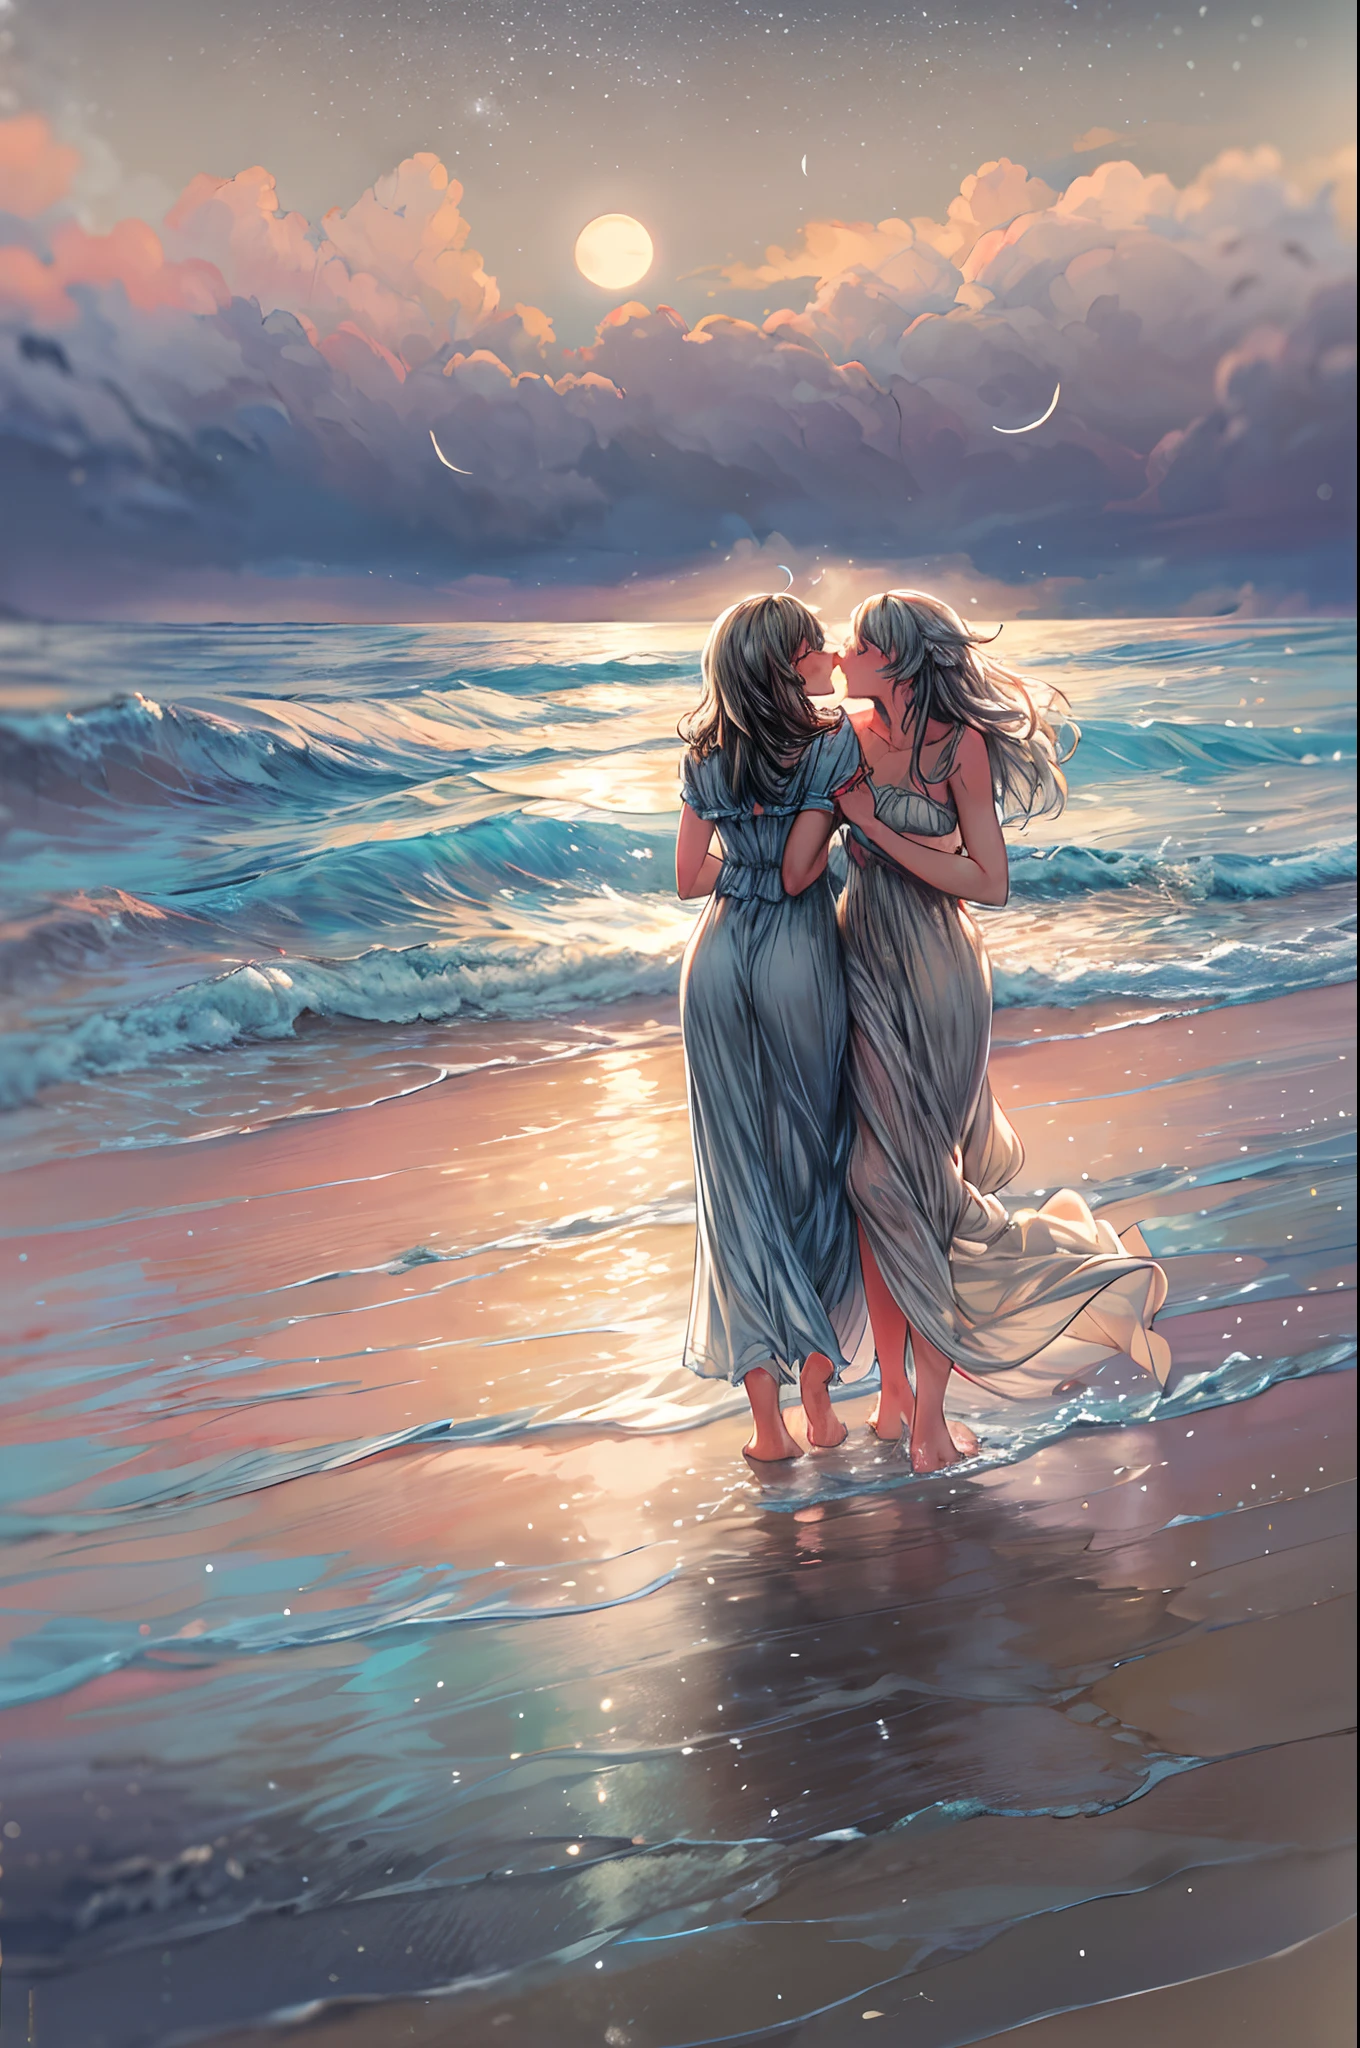 Sur une plage au clair de lune, deux femmes marchent main dans la main le long du rivage, les vagues clapotent doucement à leurs pieds nus. La lumière argentée se reflète sur l&#39;eau, jetant une lueur romantique sur leurs visages. Avec les étoiles scintillantes au-dessus et le bruit lointain des vagues qui s&#39;écrasent, leurs lèvres se rencontrent dans un tendre baiser rempli de désir et de connexion. La brise salée porte leurs rires et le parfum de la mer, les enveloppant dans un moment serein et passionné. La scène est capturée dans un rêve, style flou utilisant des couleurs pastel et des coups de pinceau doux, transmettre la nature intemporelle de leur amour.